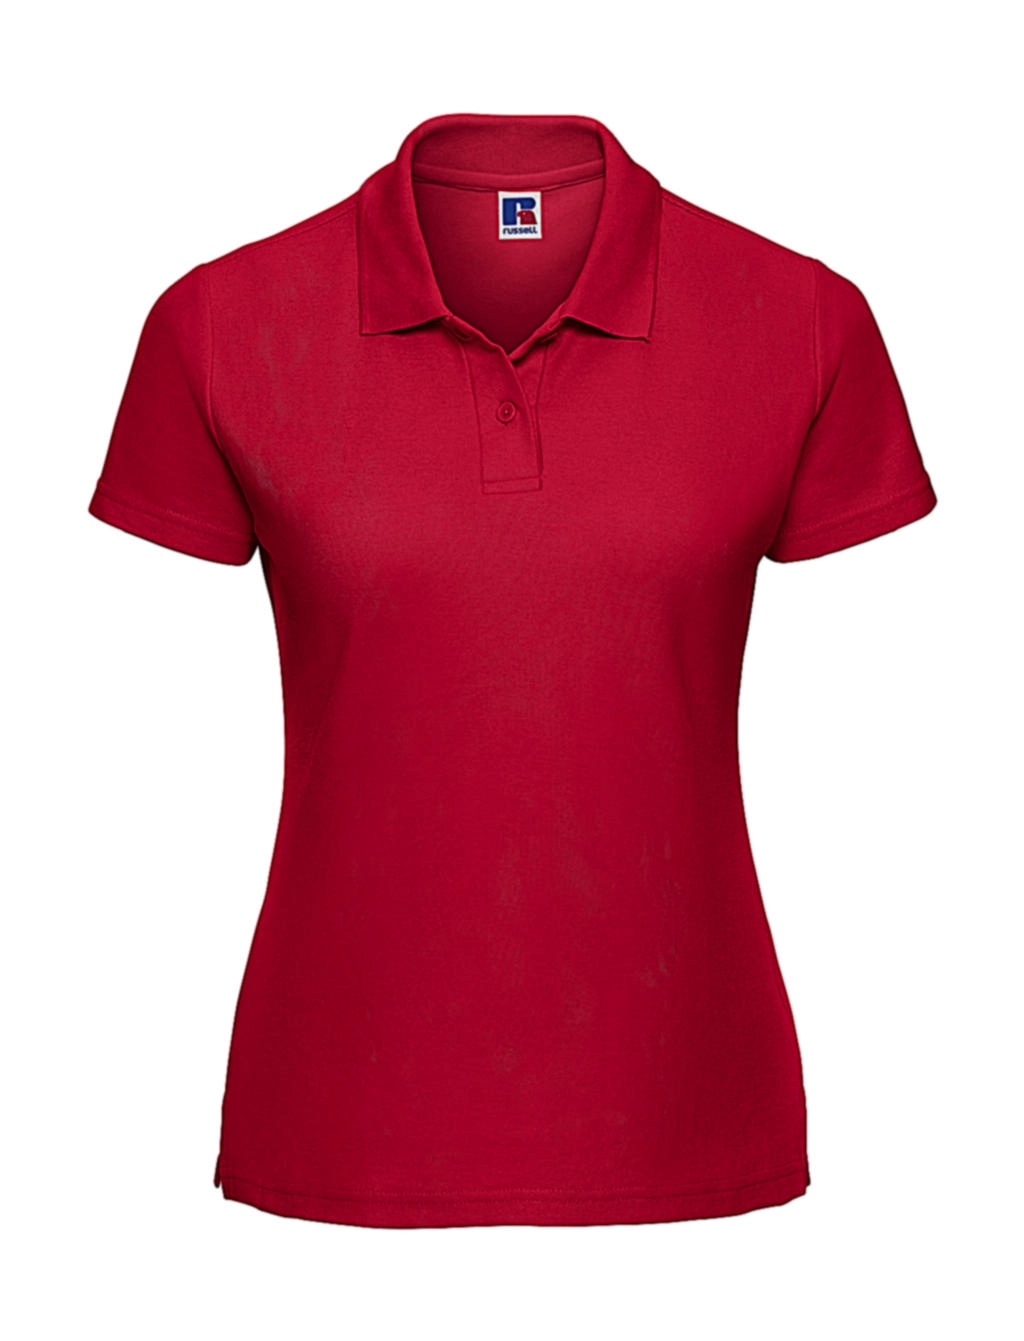 Ladies` Classic Polycotton Polo zum Besticken und Bedrucken in der Farbe Classic Red mit Ihren Logo, Schriftzug oder Motiv.